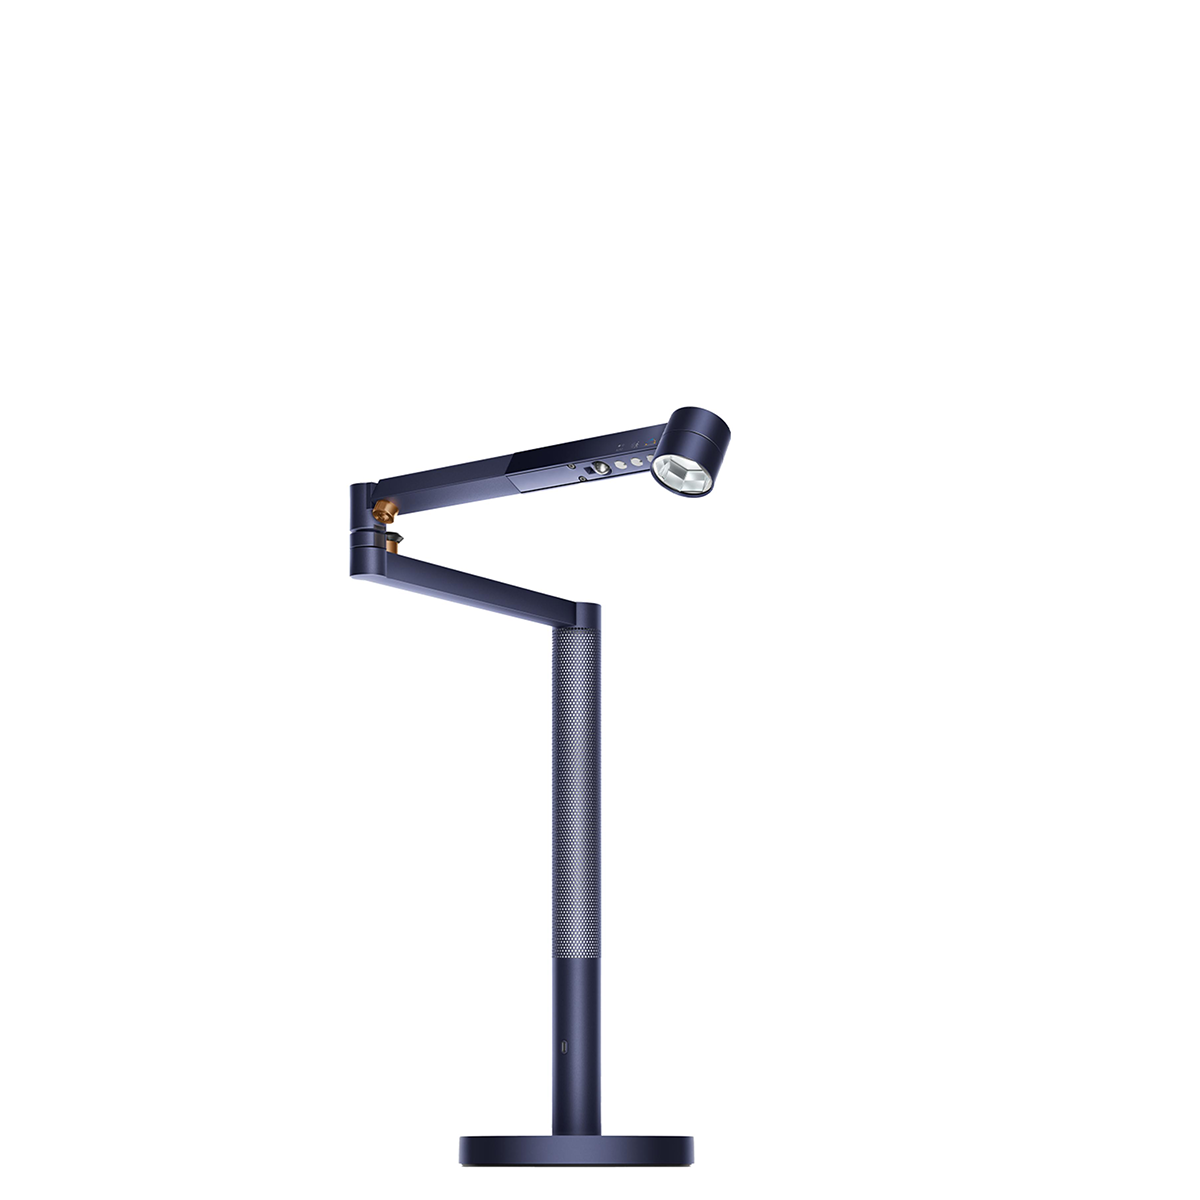 Настольная лампа Dyson Solarcycle Morph™ desk - Prussian Blue/Rich Copper (554968-01)